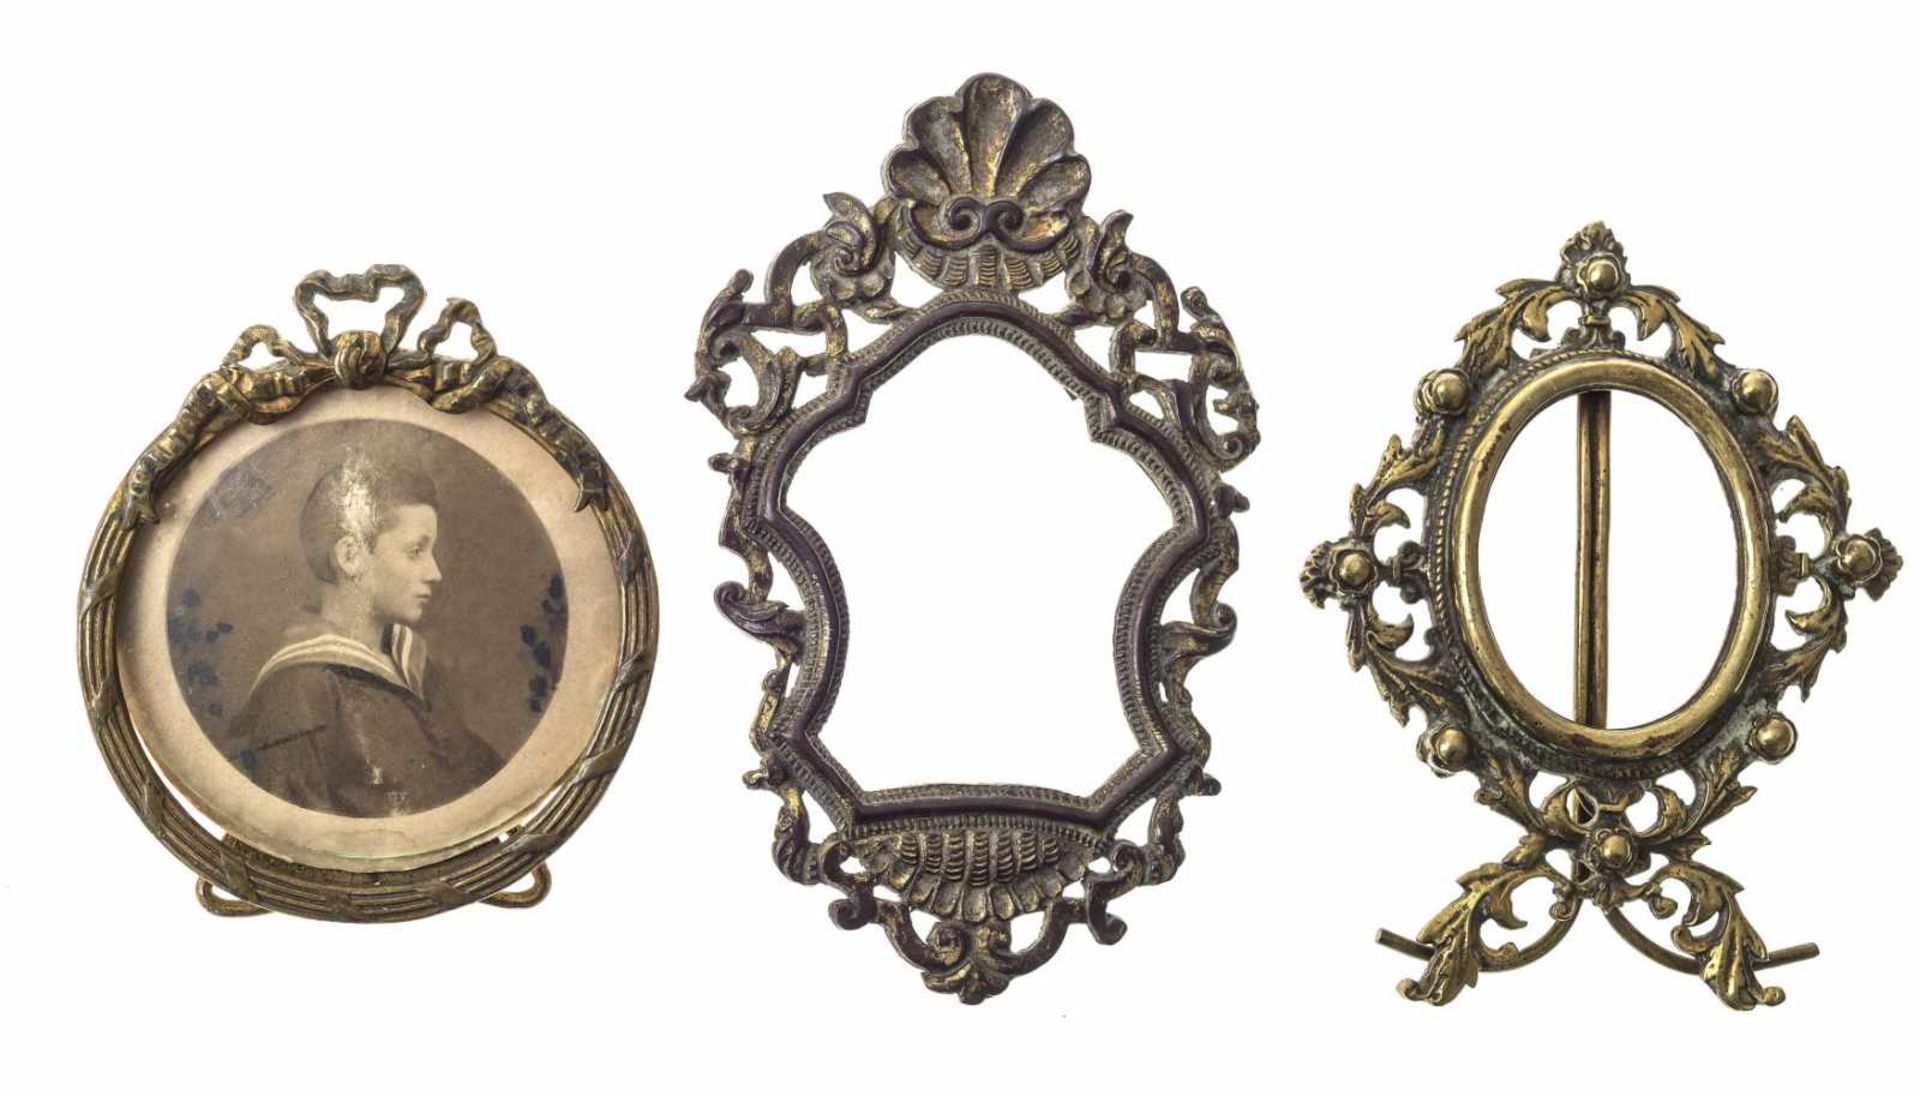 Drei Rahmen für MiniaturenAlpenländisch, um 1650-1680 bzw. zwei um 1900. Kupfer bzw. getrieben. Zwei